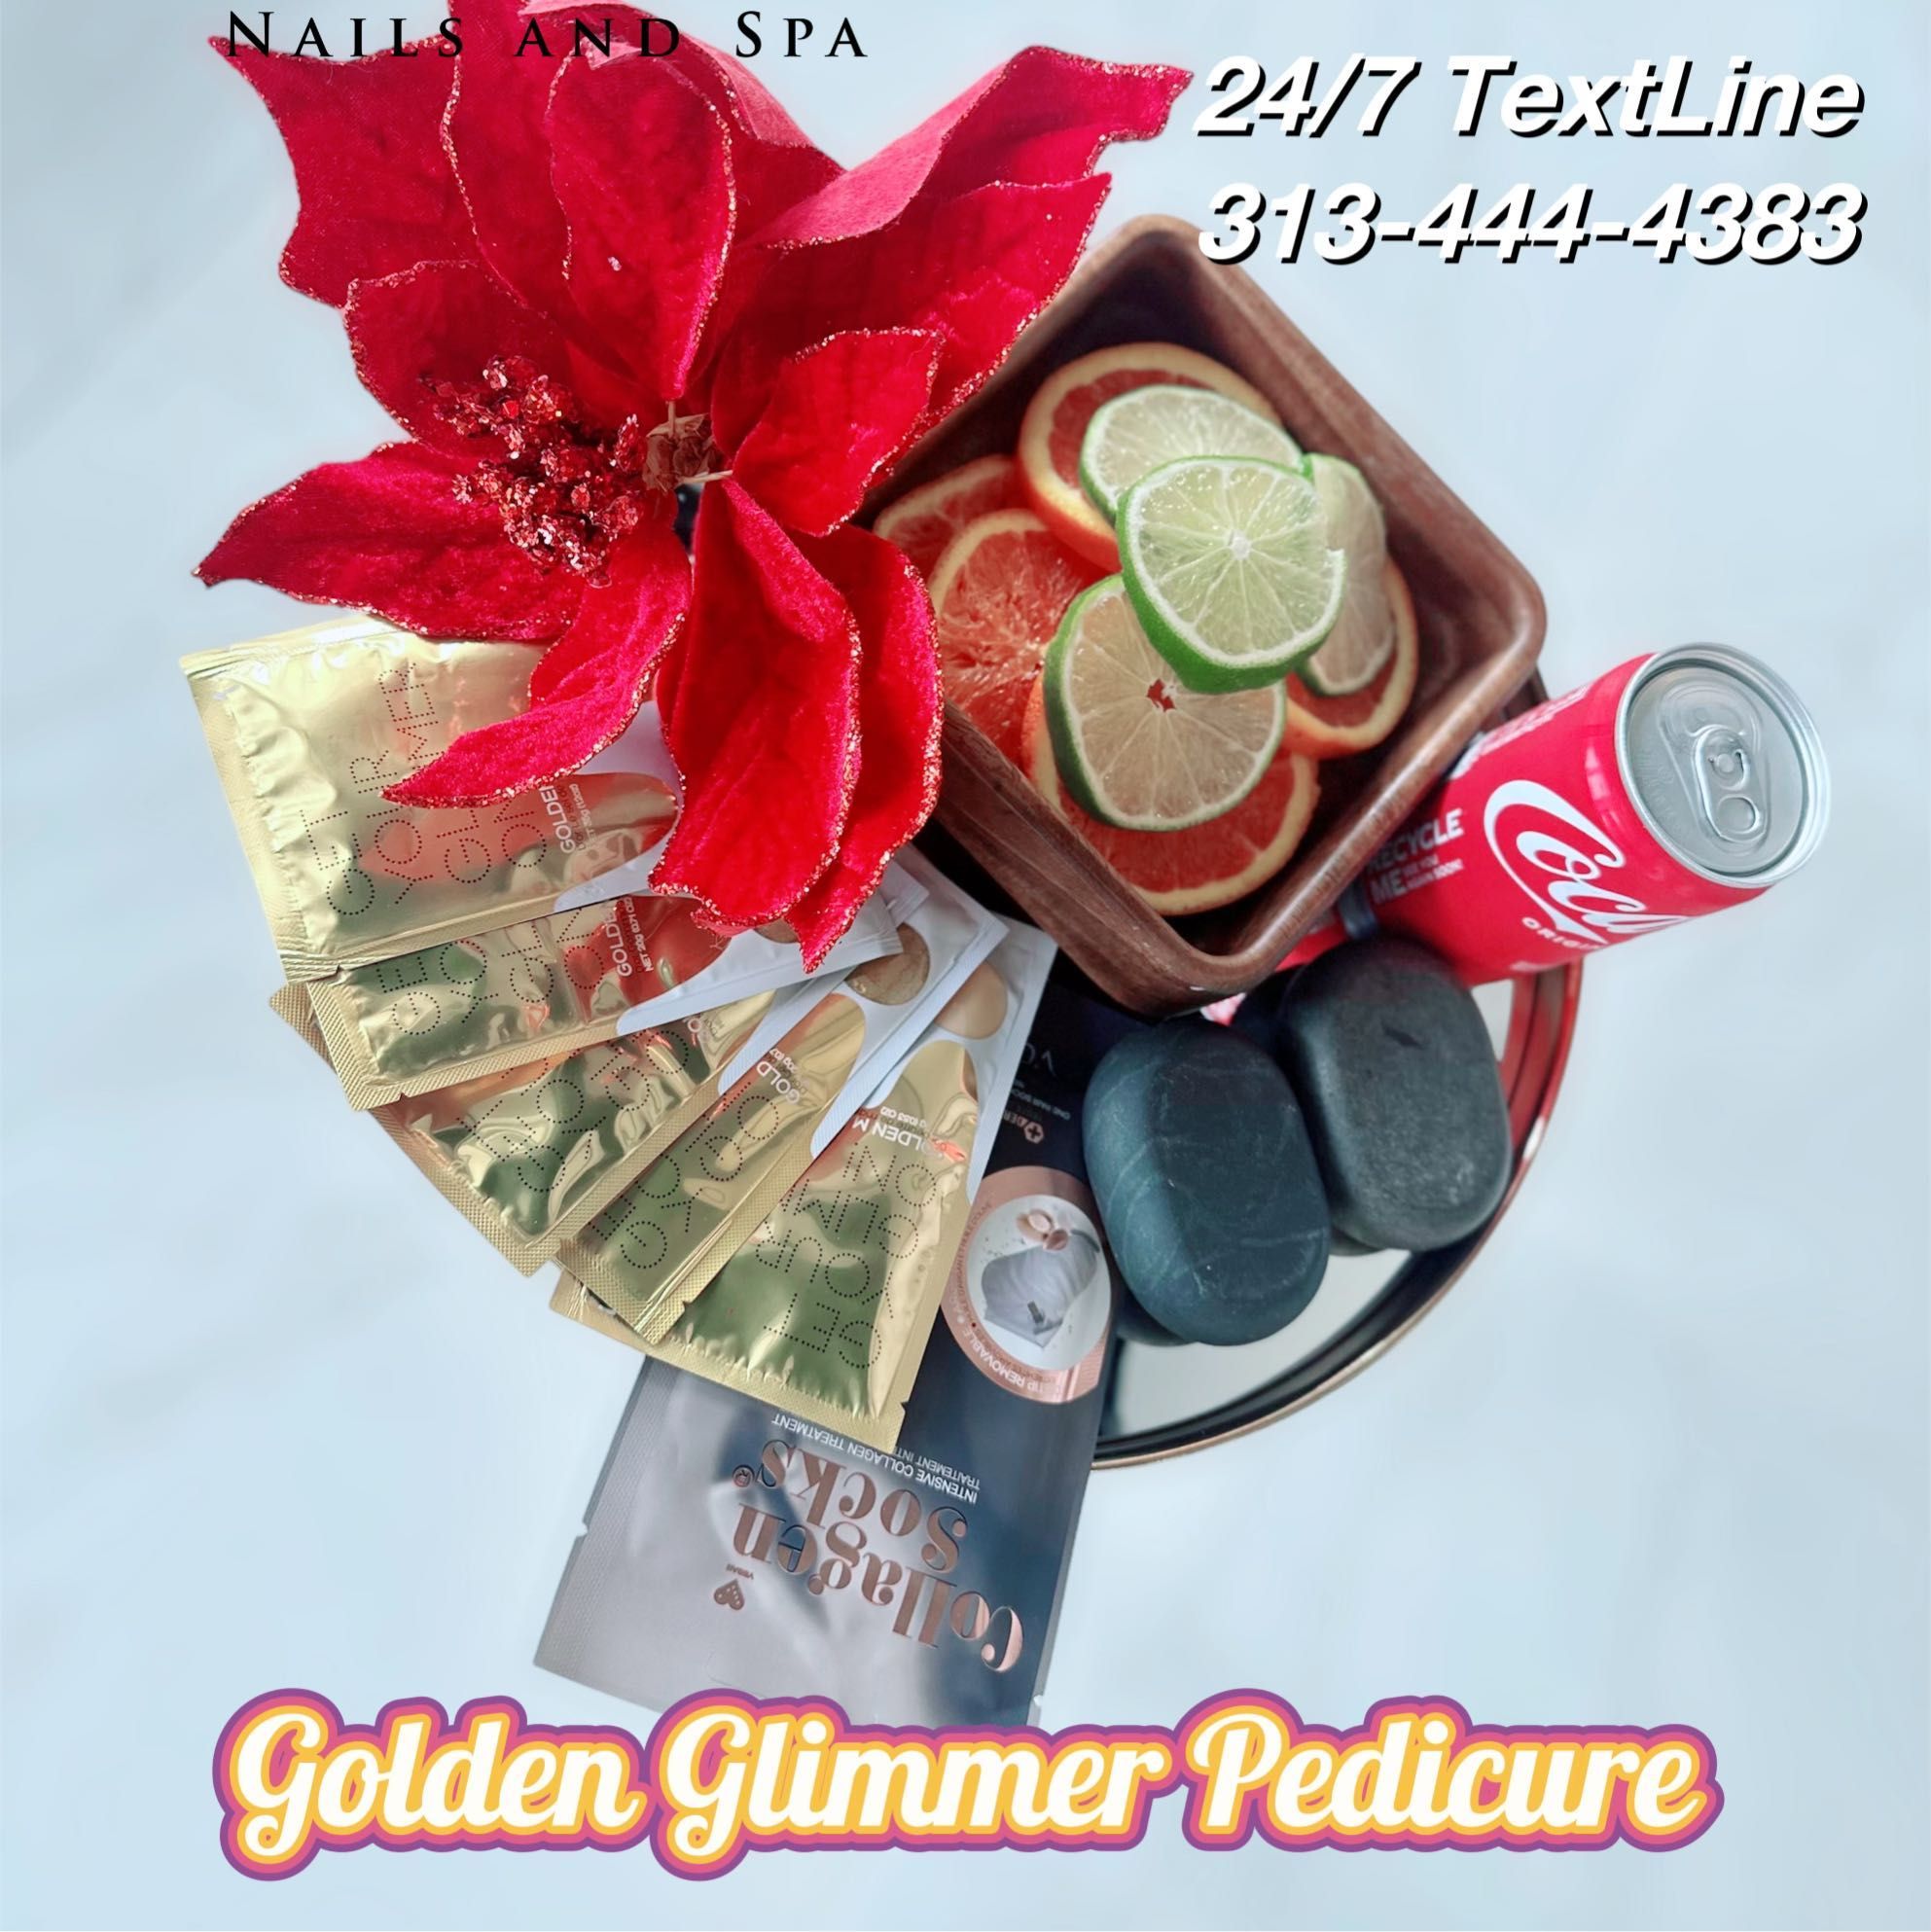 Golden Glimmer pedicure portfolio